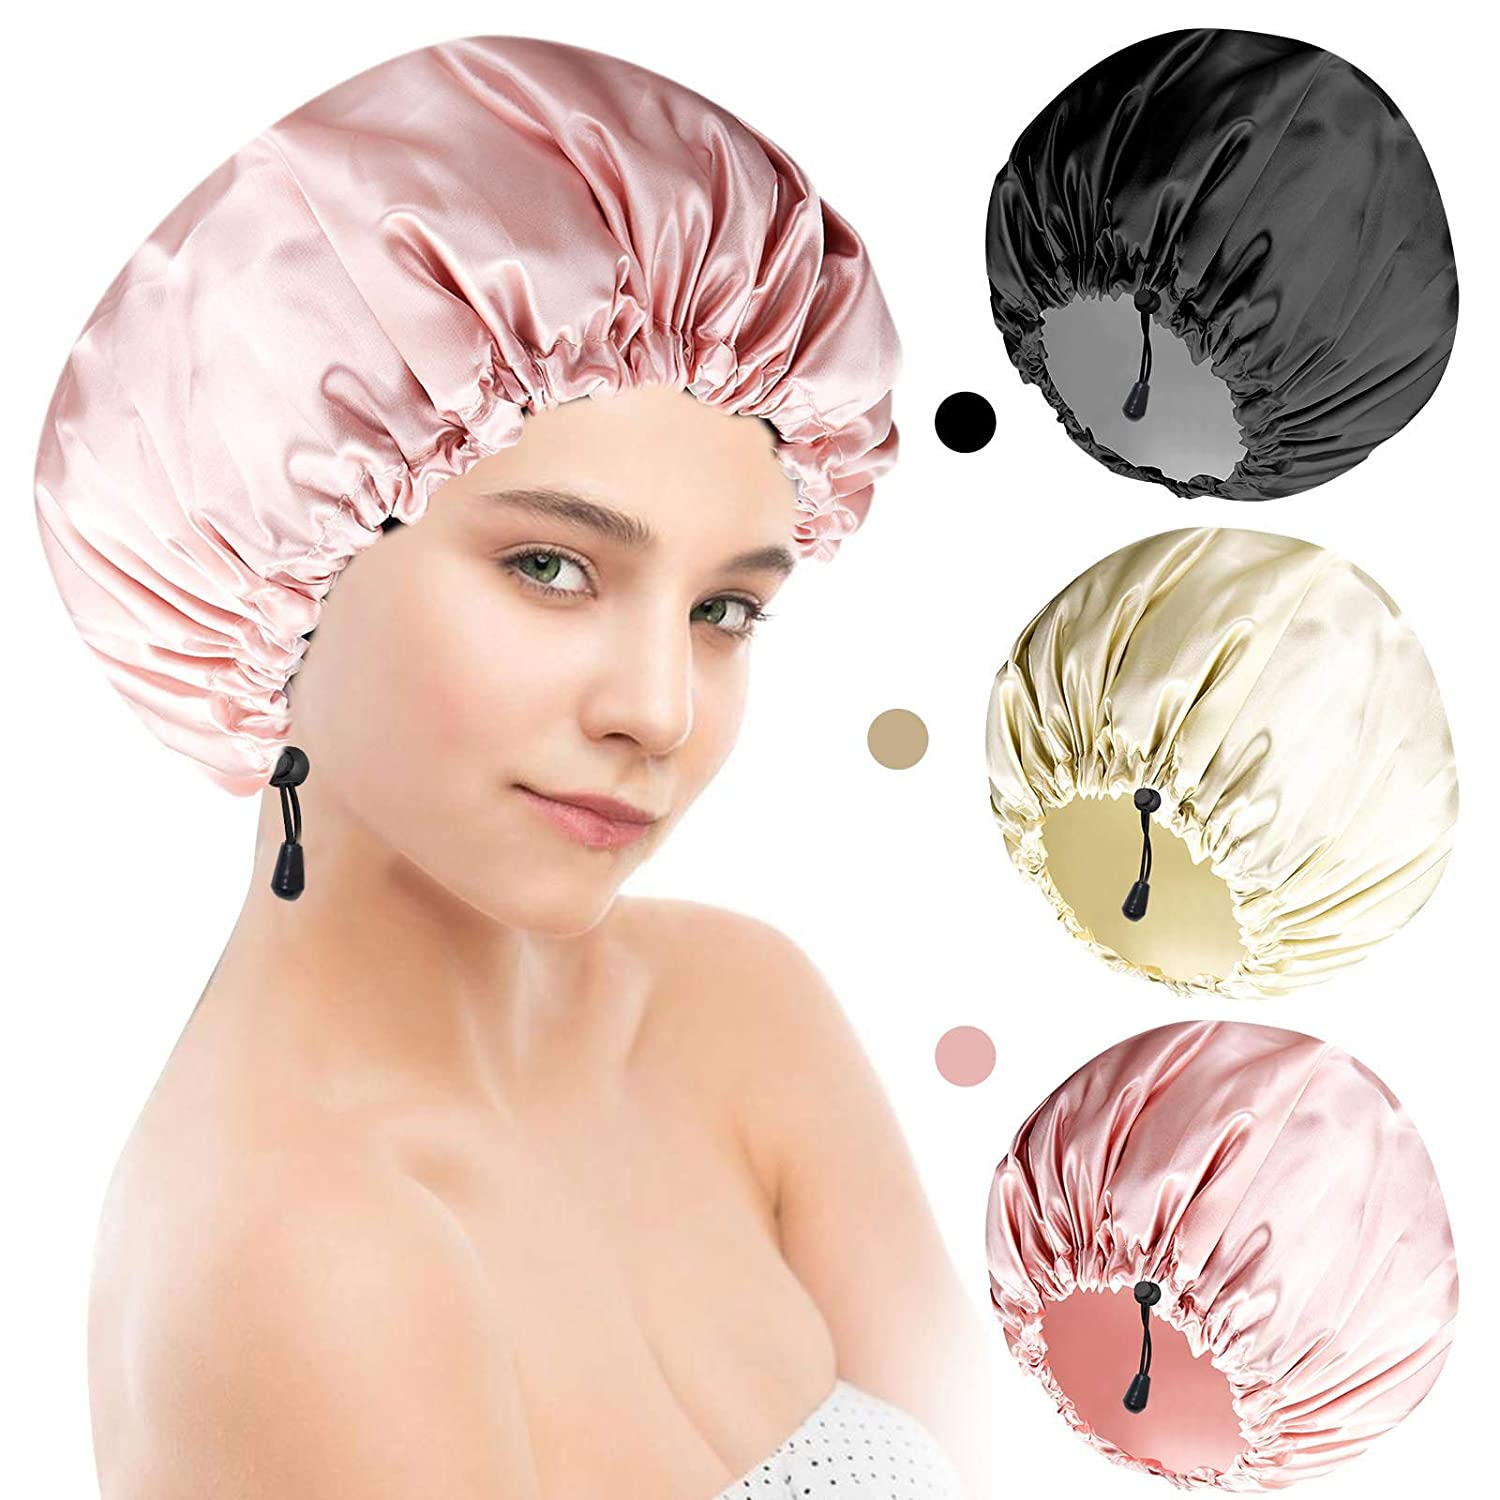 Women Shower Caps Waterproof Hair Bonnet Set Para sa mga Bata Adjustable